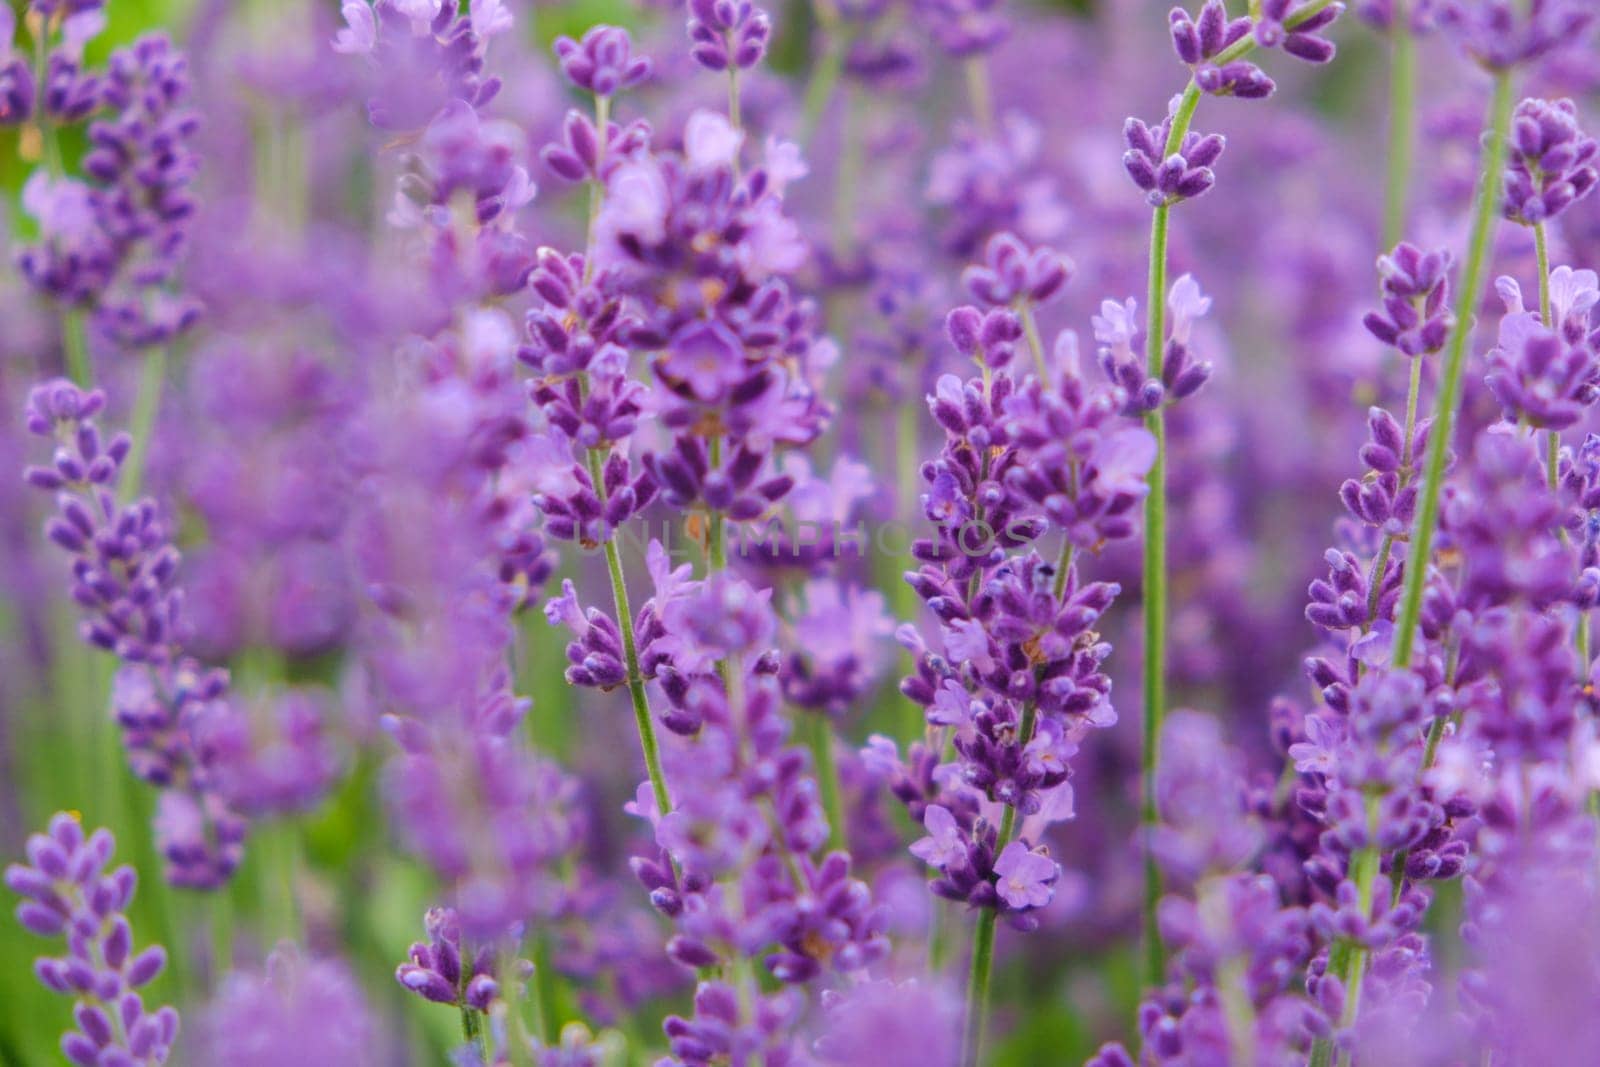 Soft focus flowers, beautiful lavender flowers blooming. by leonik